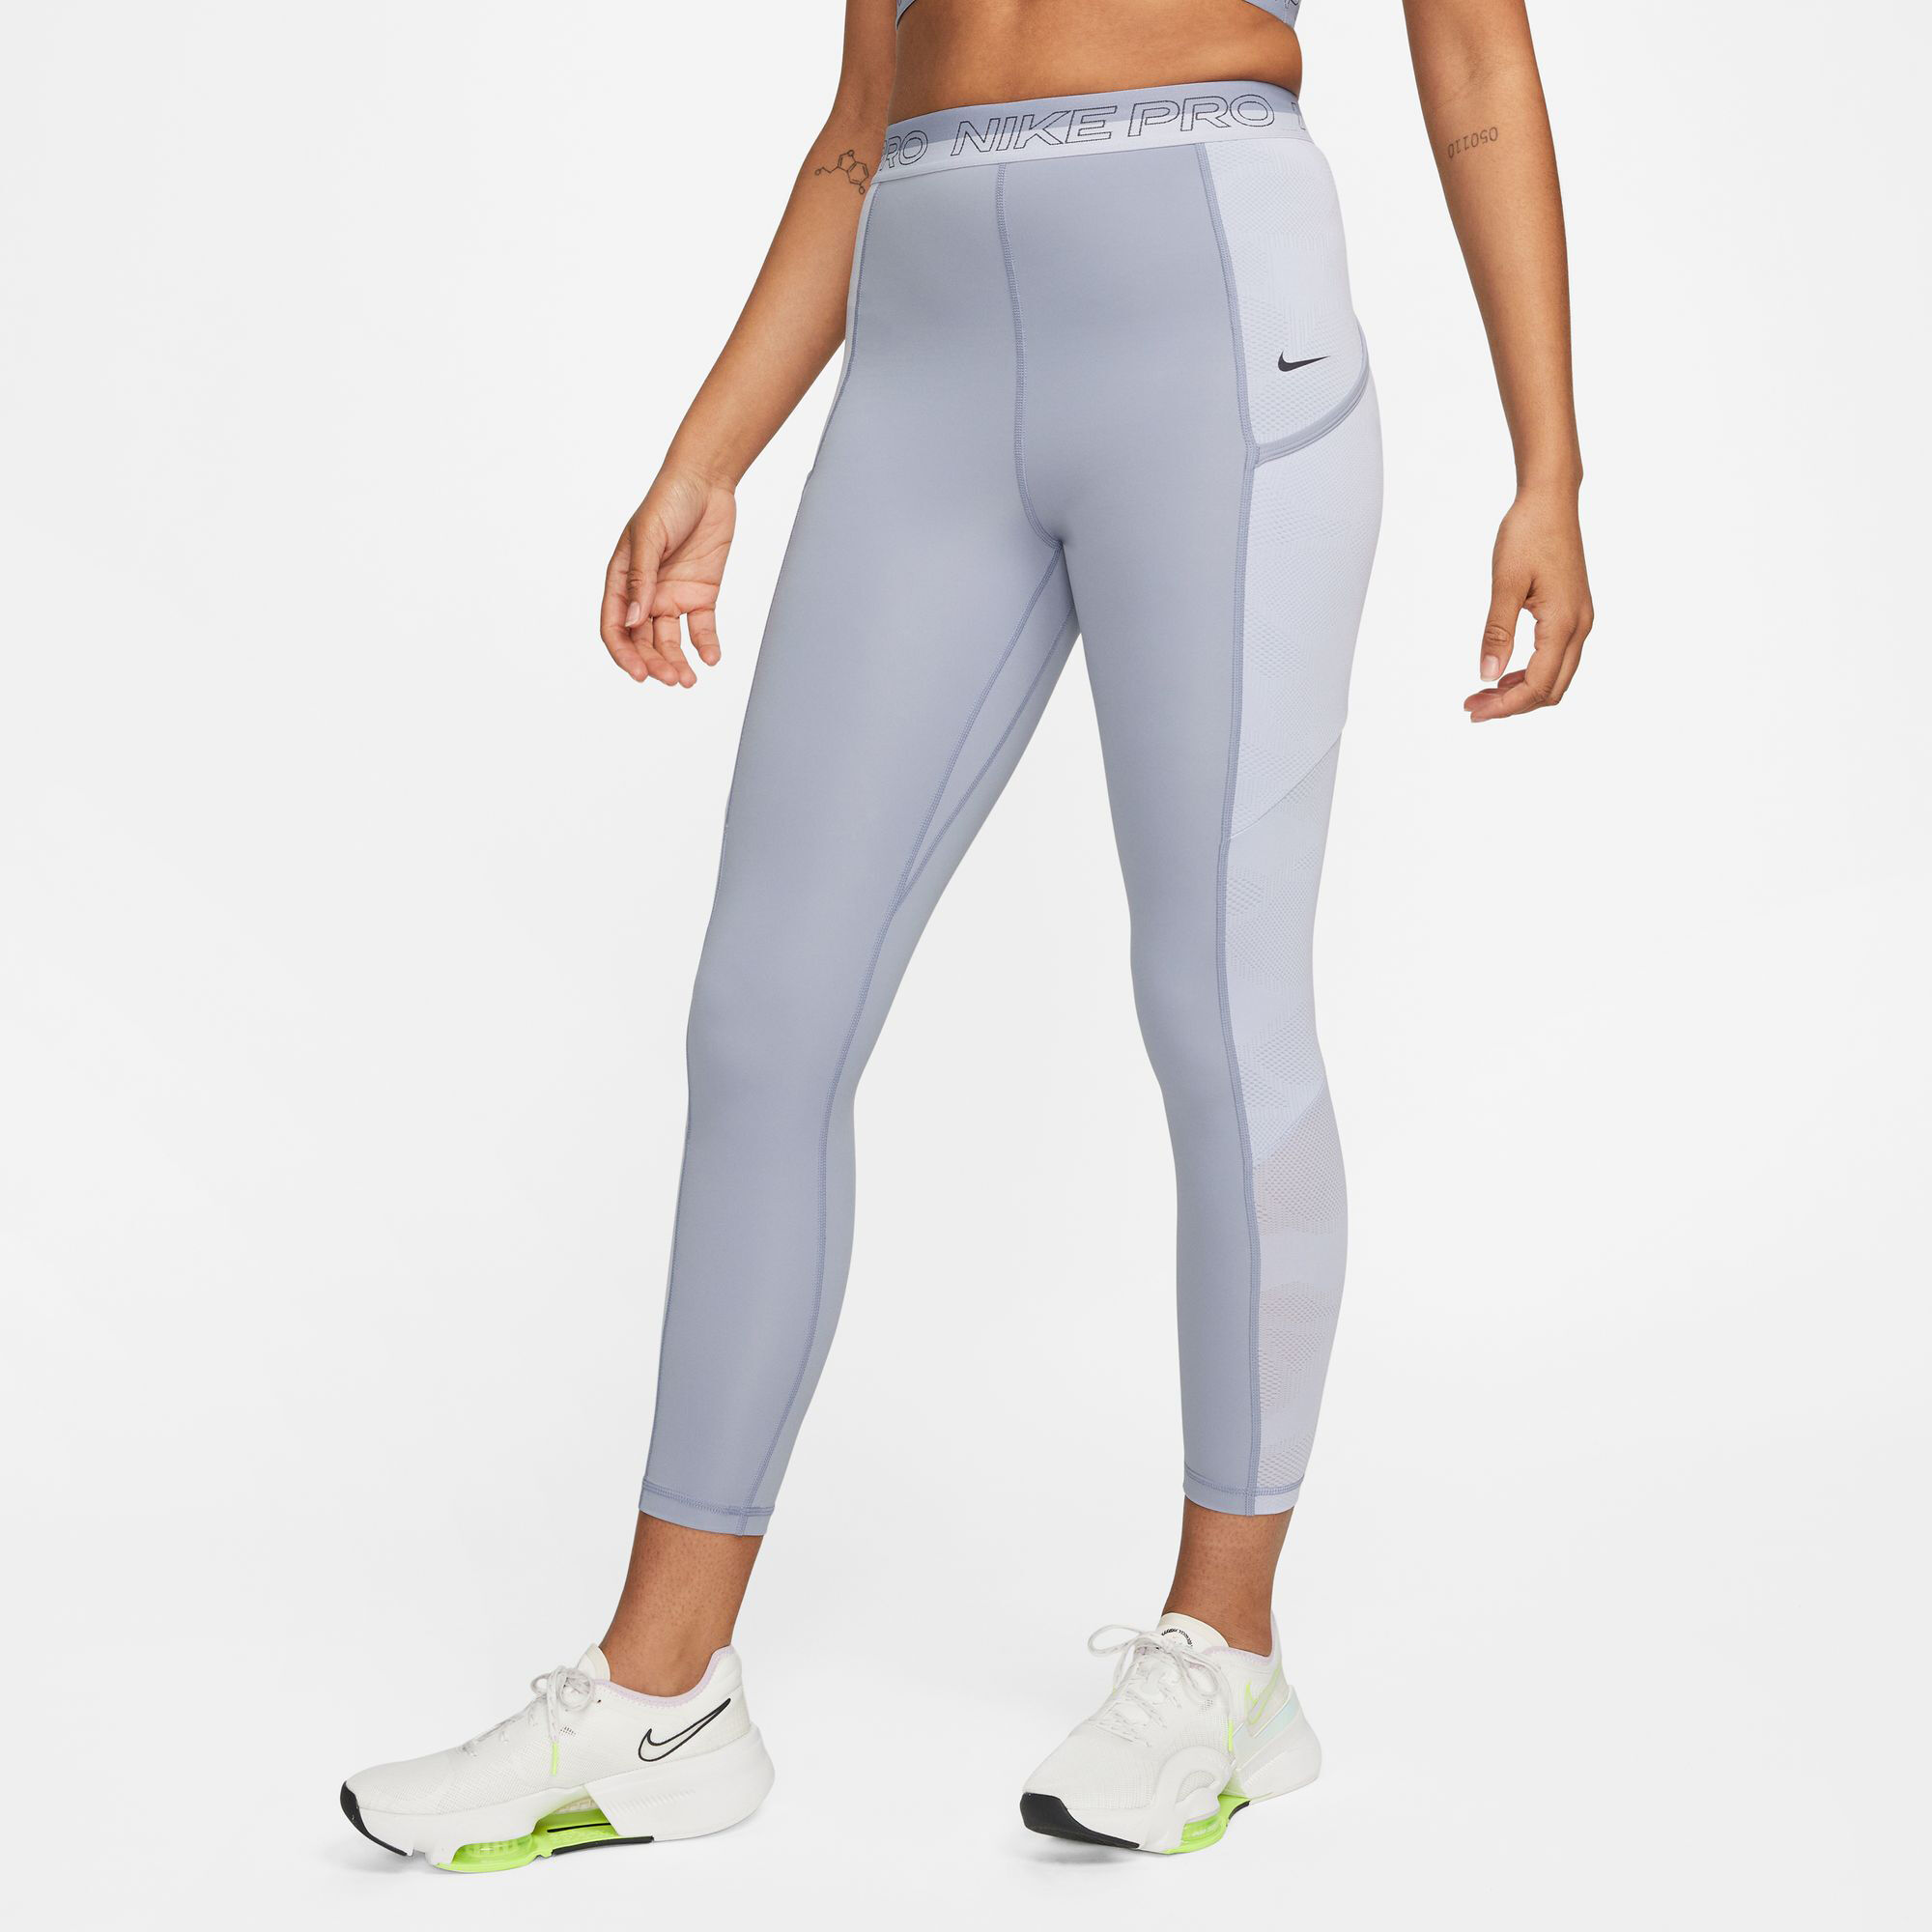 Los leggings Nike con mejor sujeción y compresión. Nike ES